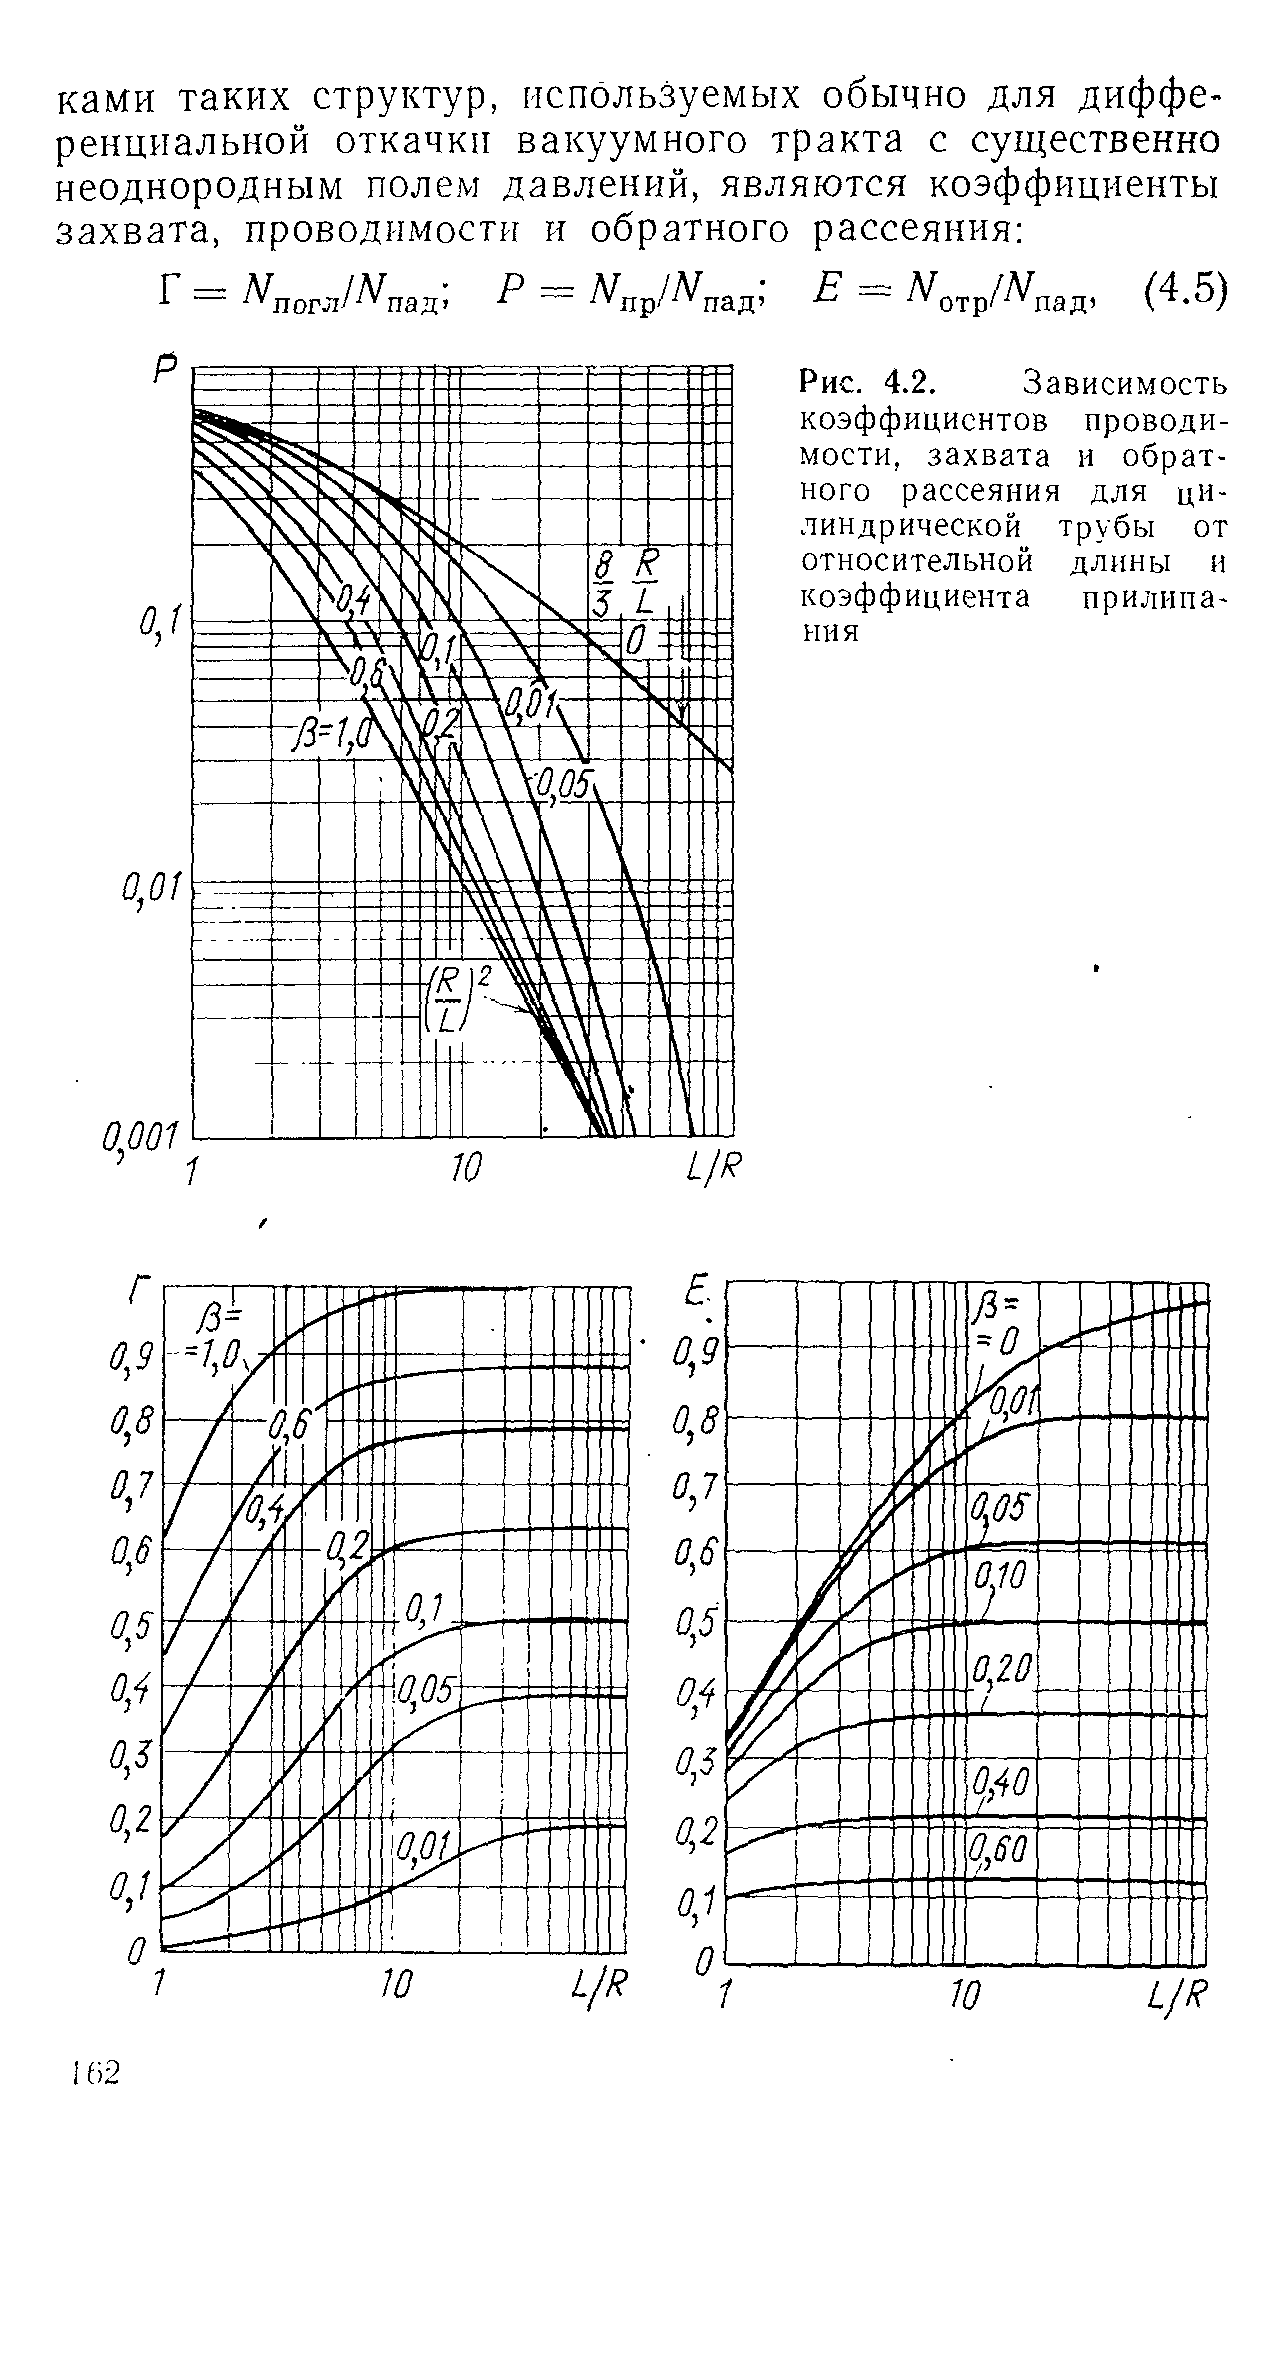 Рис. 4.2. Зависимость коэффициентов проводимости, захвата и обратного рассеяния для цилиндрической трубы от относительной длины и коэффициента прилипания
